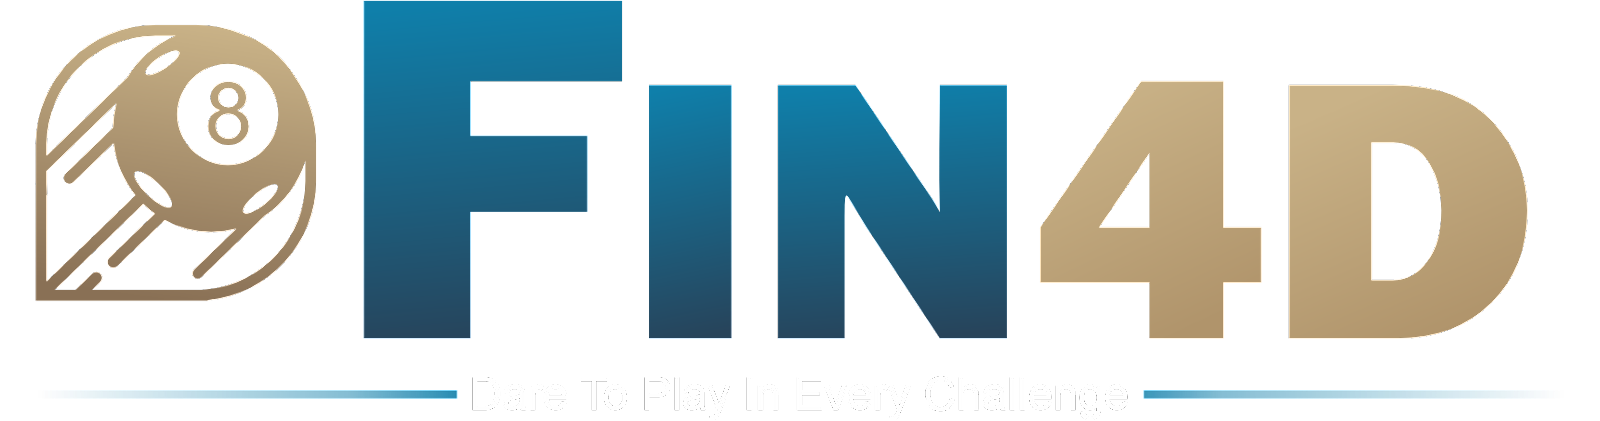 FIN4D Logo